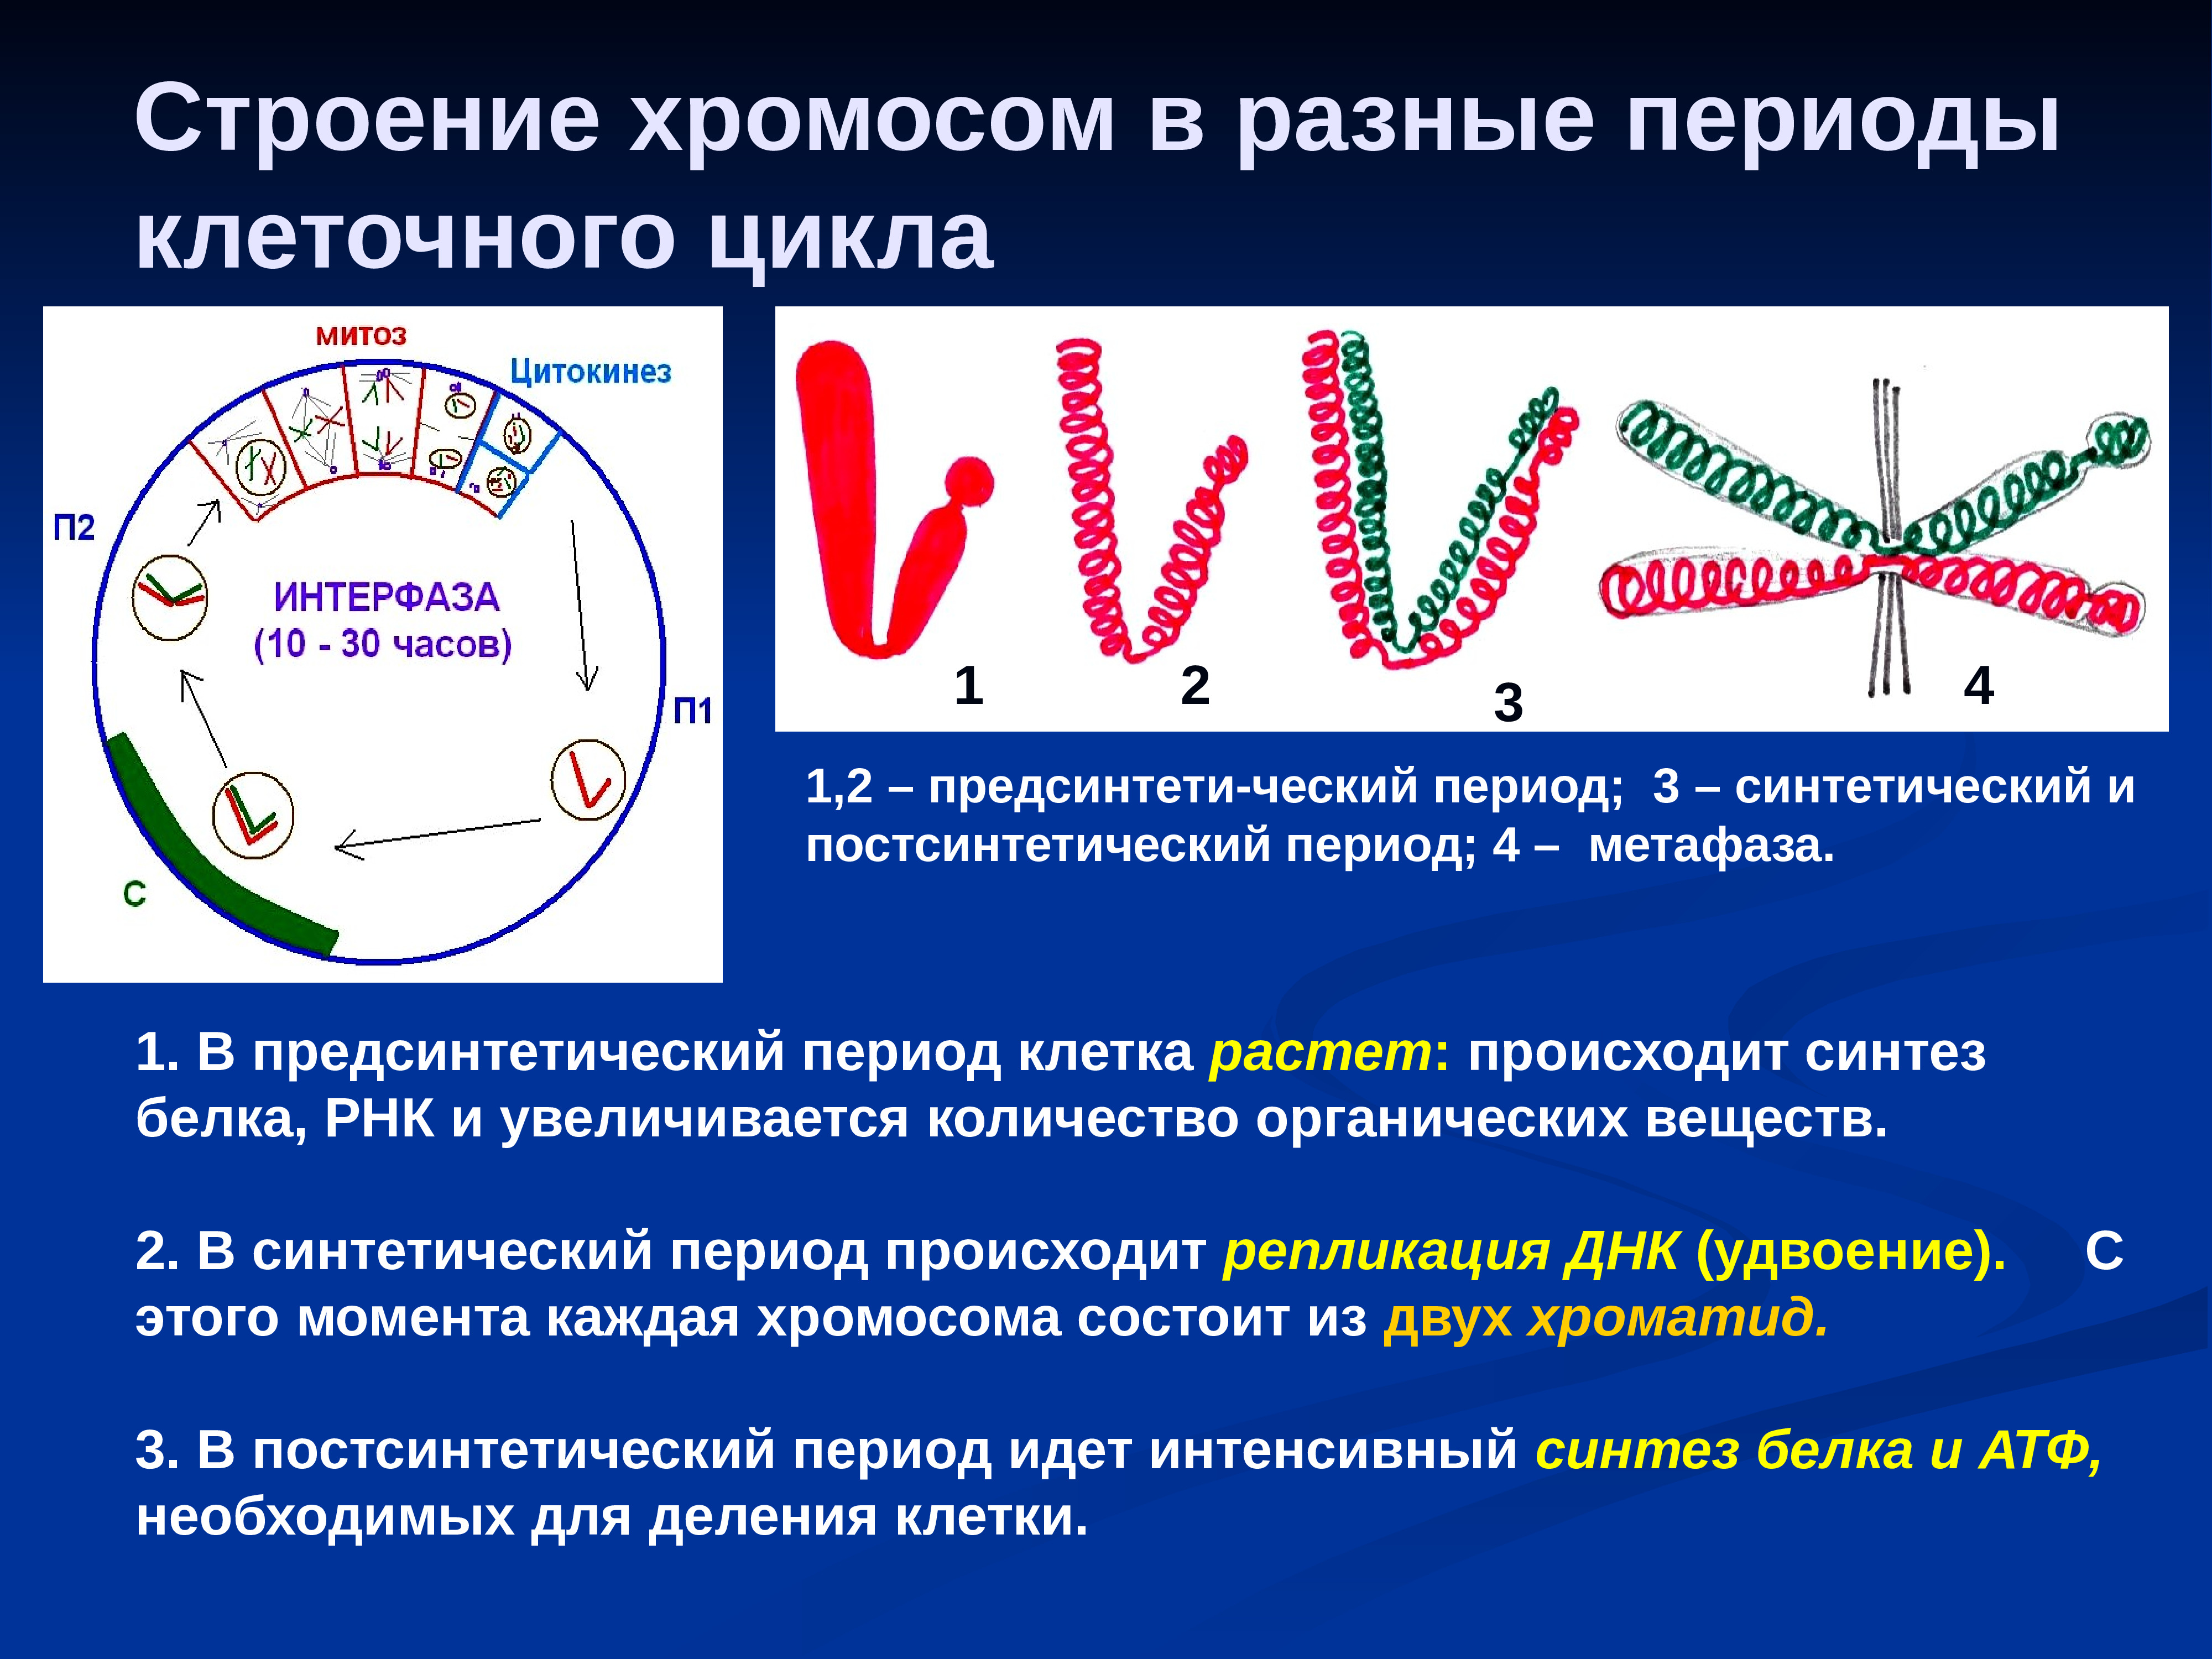 Образование двухроматидных хромосом спирализация хромосом. Строение хромосомы. Строение хромосом в разные периоды клеточного цикла. Хромосом в разные периоды клеточного деления. Изменение хромосом в клеточном цикле.